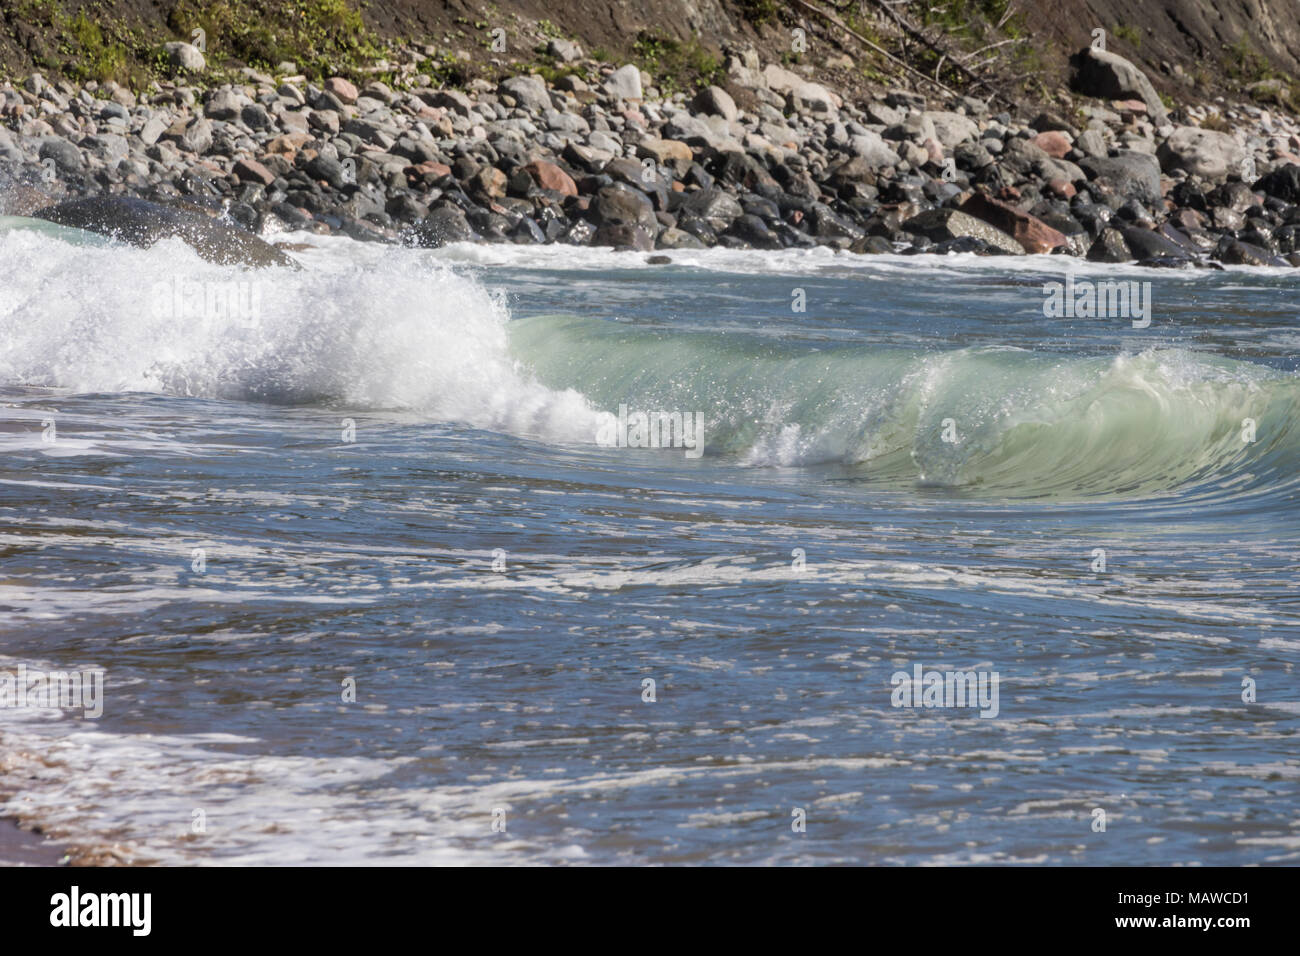 Le fracas des vagues, Ingonish Beach, Nova Scotia Canada Banque D'Images